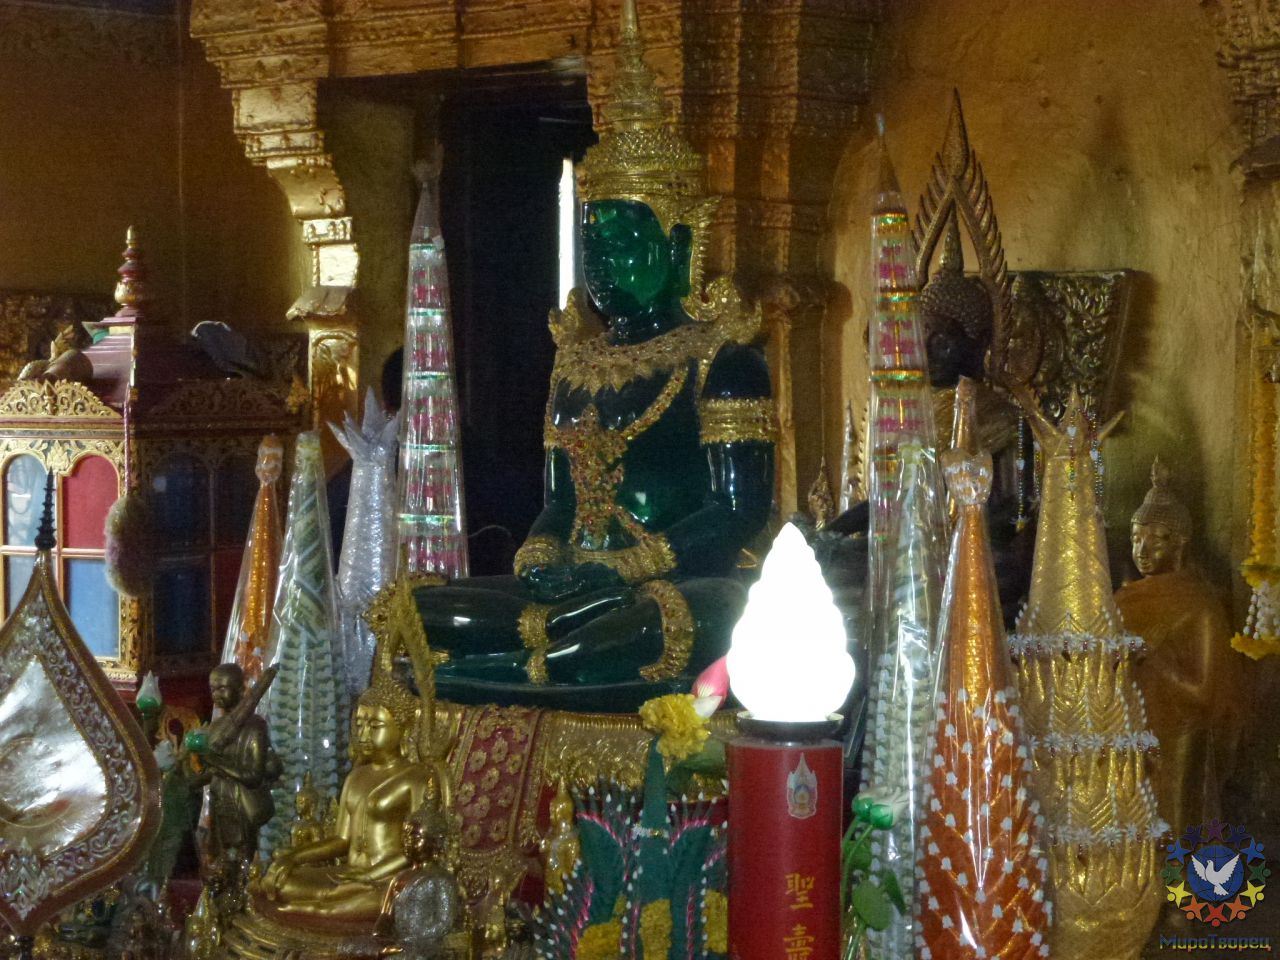 Этот Храм нас очень впечатлил!  Мы решили сделать подношение Будде по местной традиции. - Лаос, январь 2012